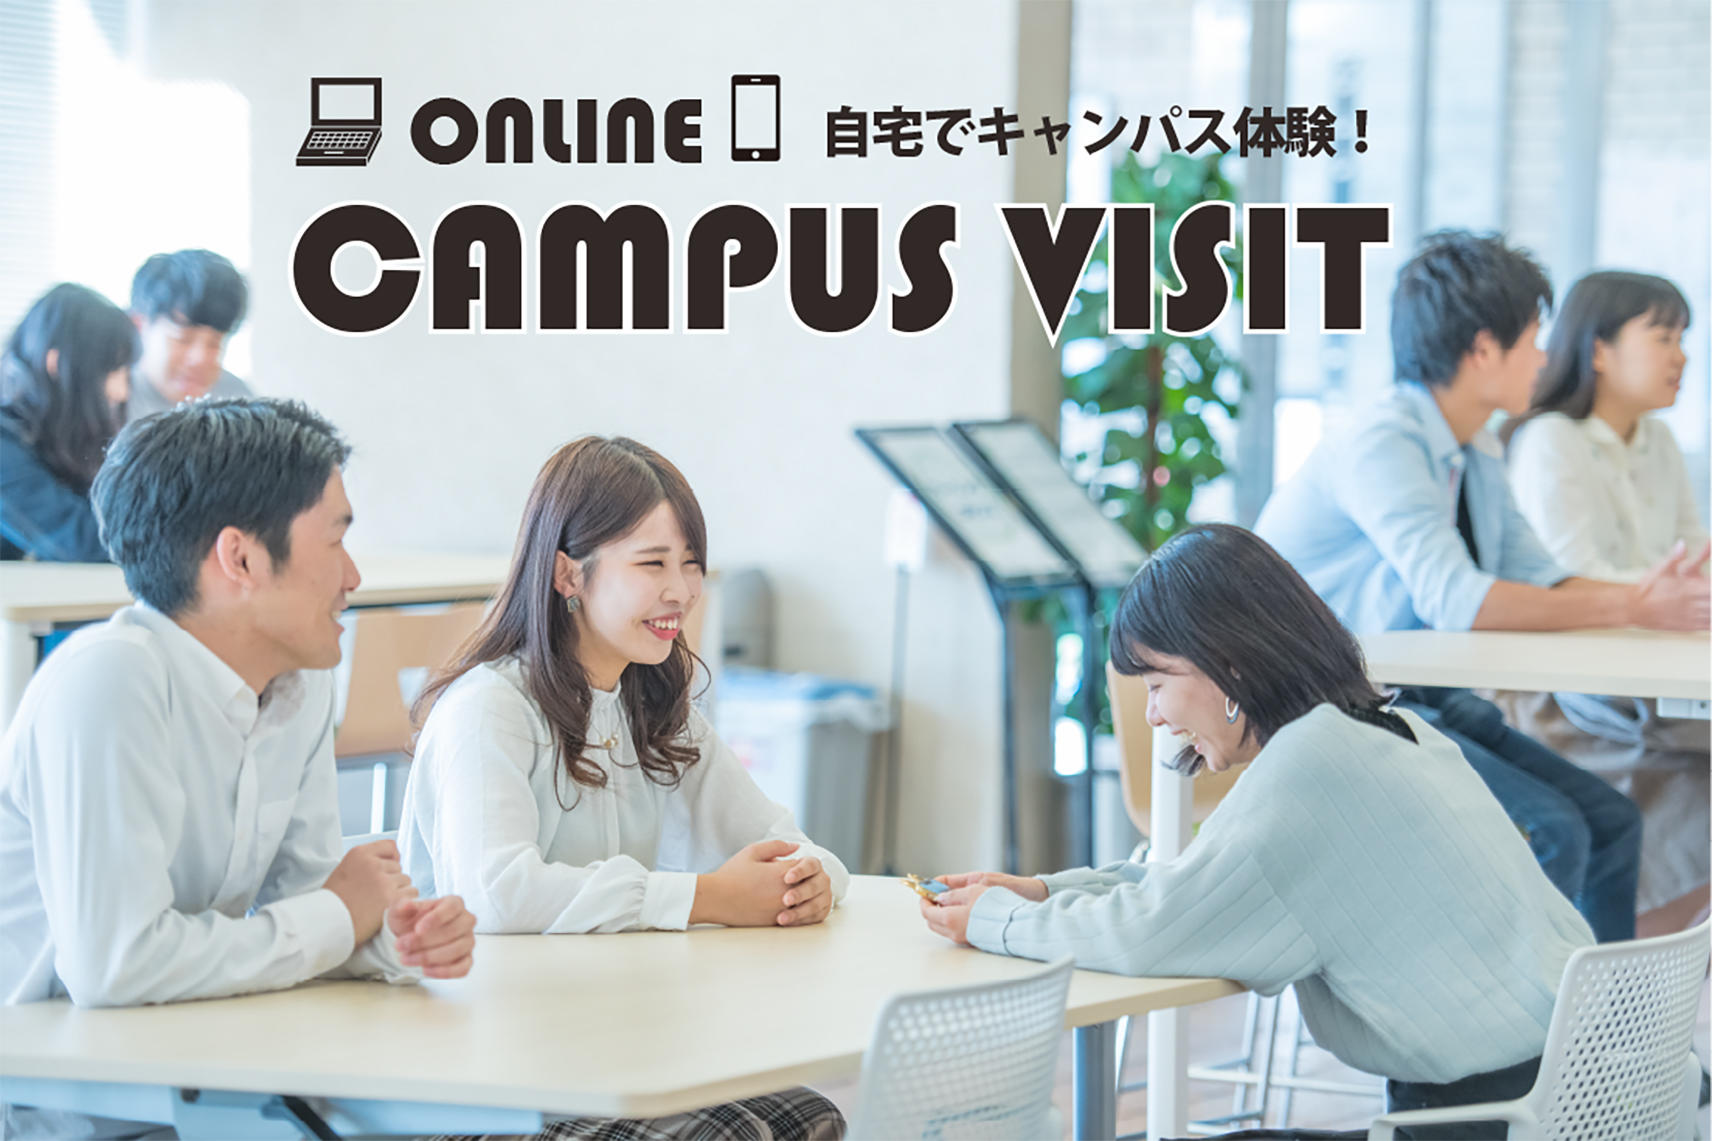 産業能率大学「ONLINE CAMPUS VISIT」を公開中　オンラインでキャンパスを体験するコンテンツ充実！　オンライン相談・360°画像キャンパス見学・授業密着動画　